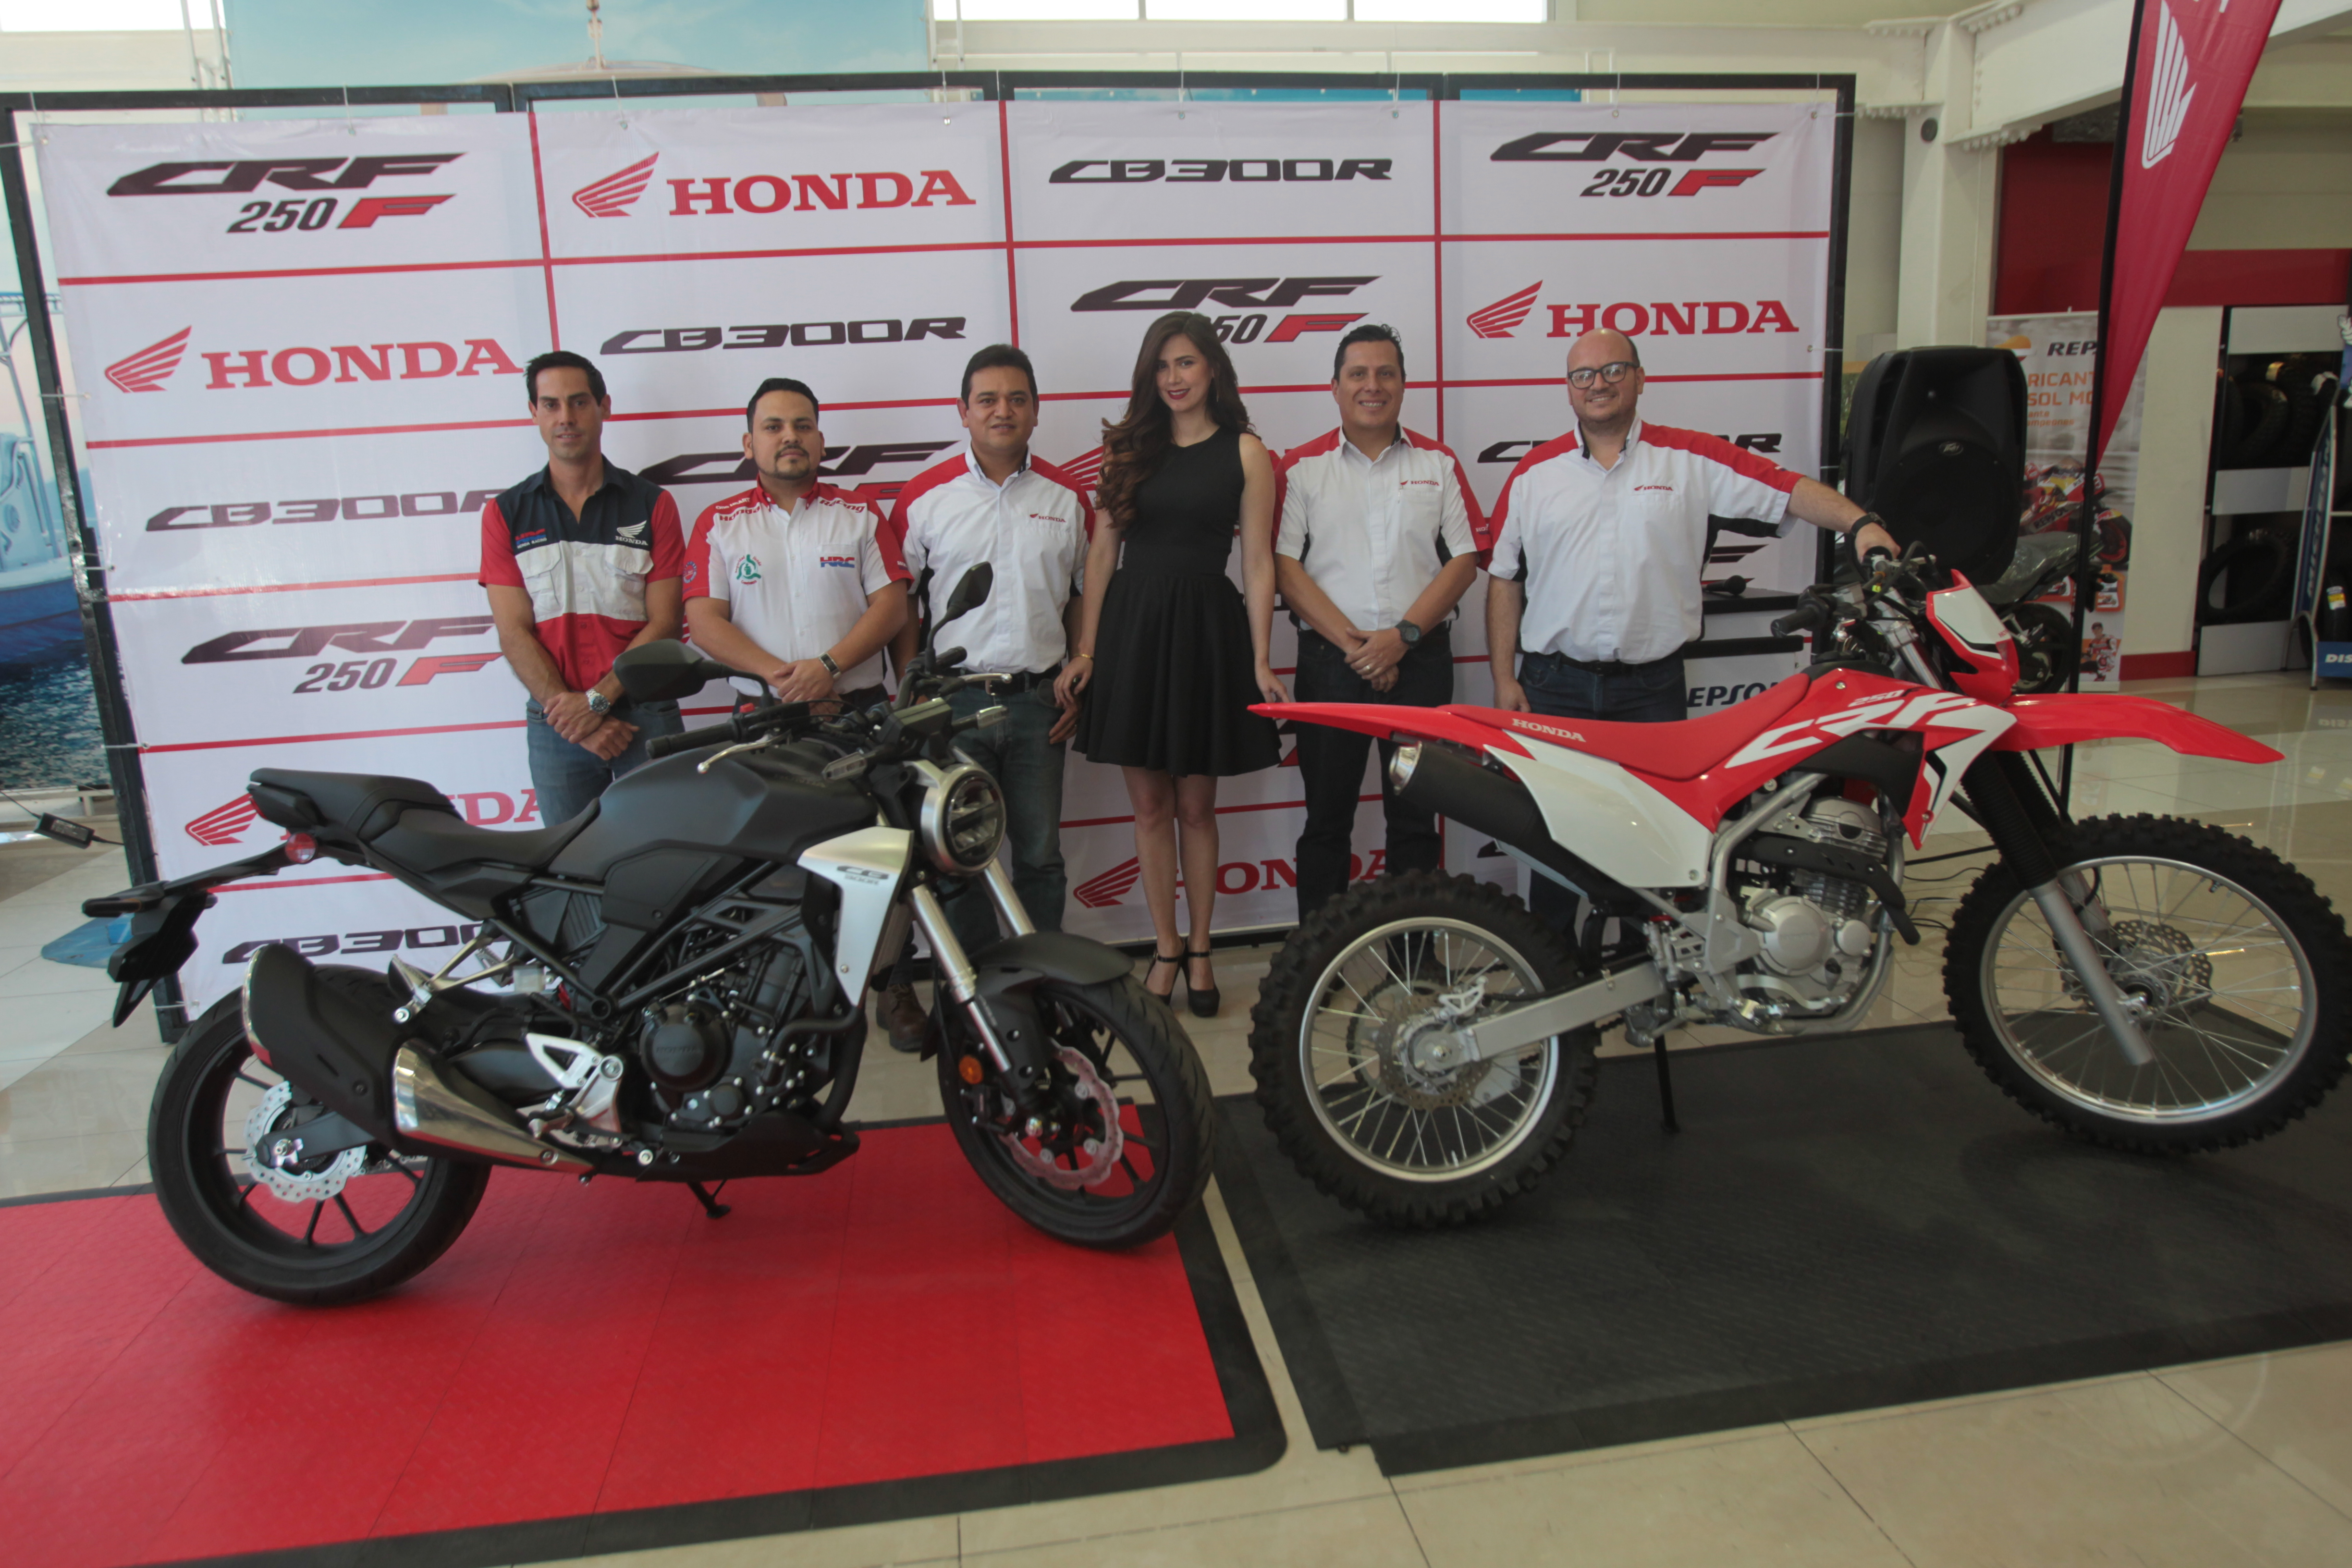 Personeros de Honda Guatemala presentaron los dos nuevos modelos de motocicletas.